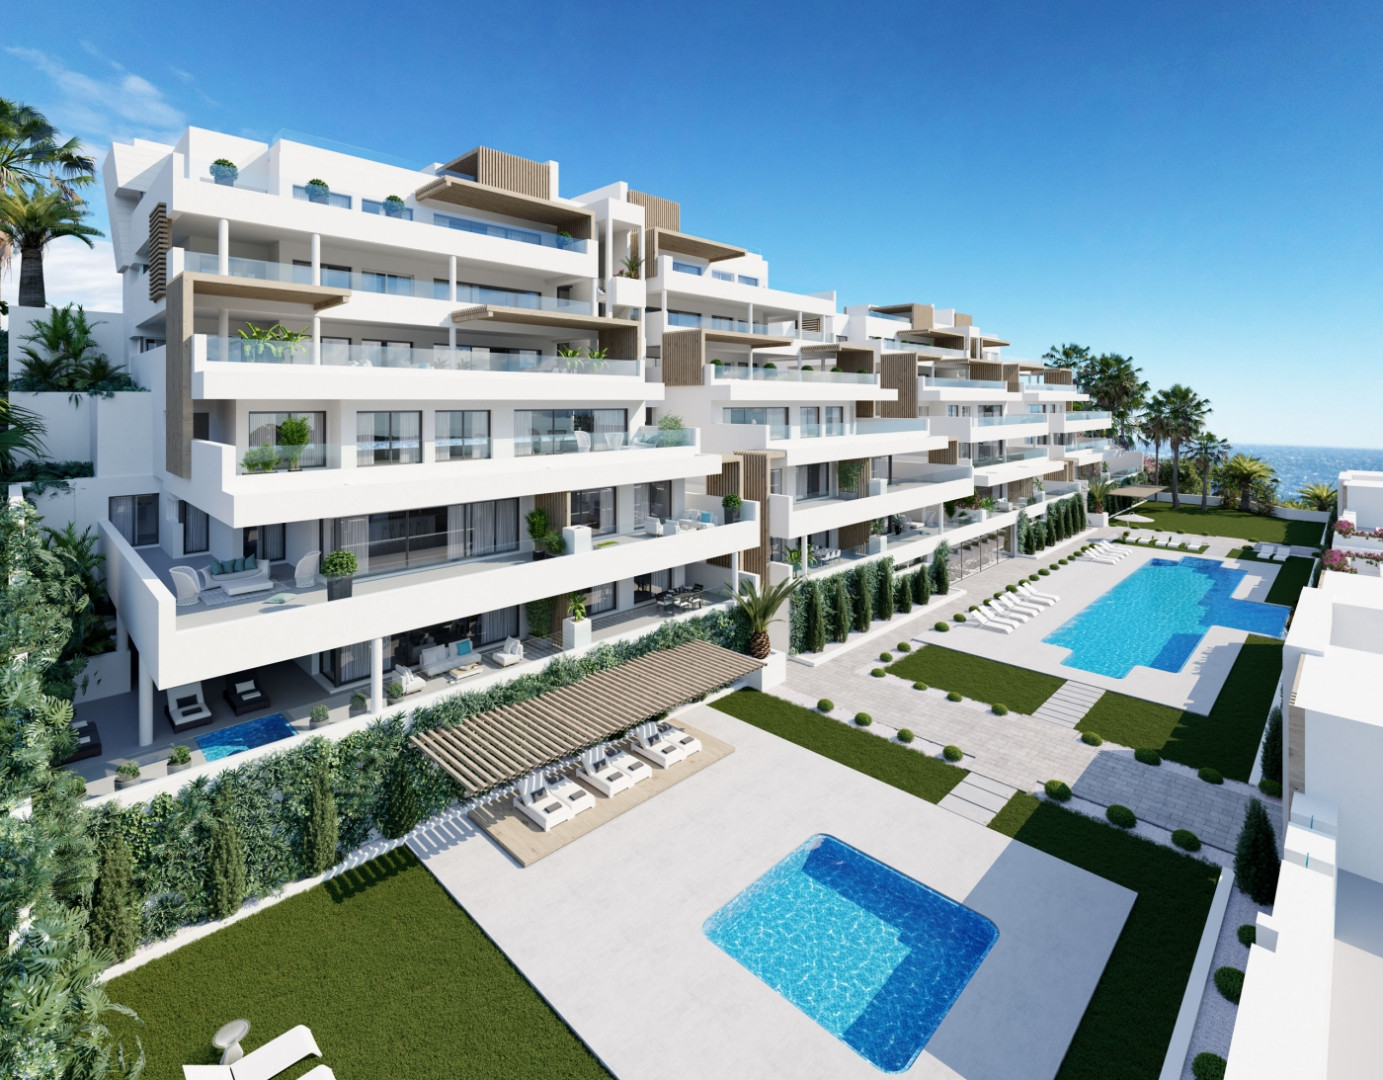 Appartementen en penthouses met fantastisch zeezicht en alles op loopafstand in Estepona.PL141 1e fase uitverkocht!